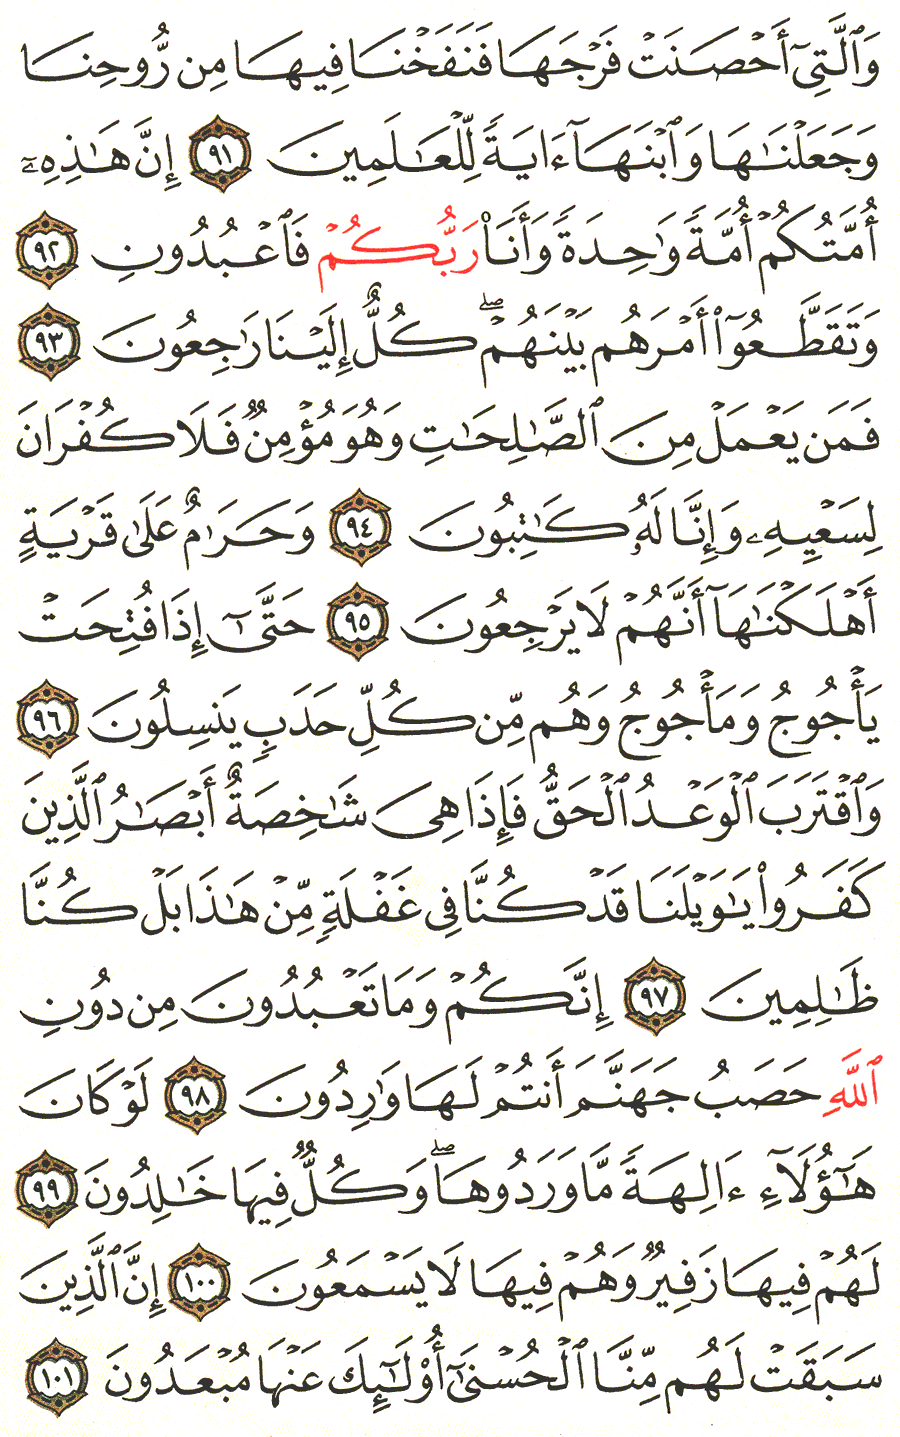 الصفحة رقم 330  من القرآن الكريم مكتوبة من المصحف